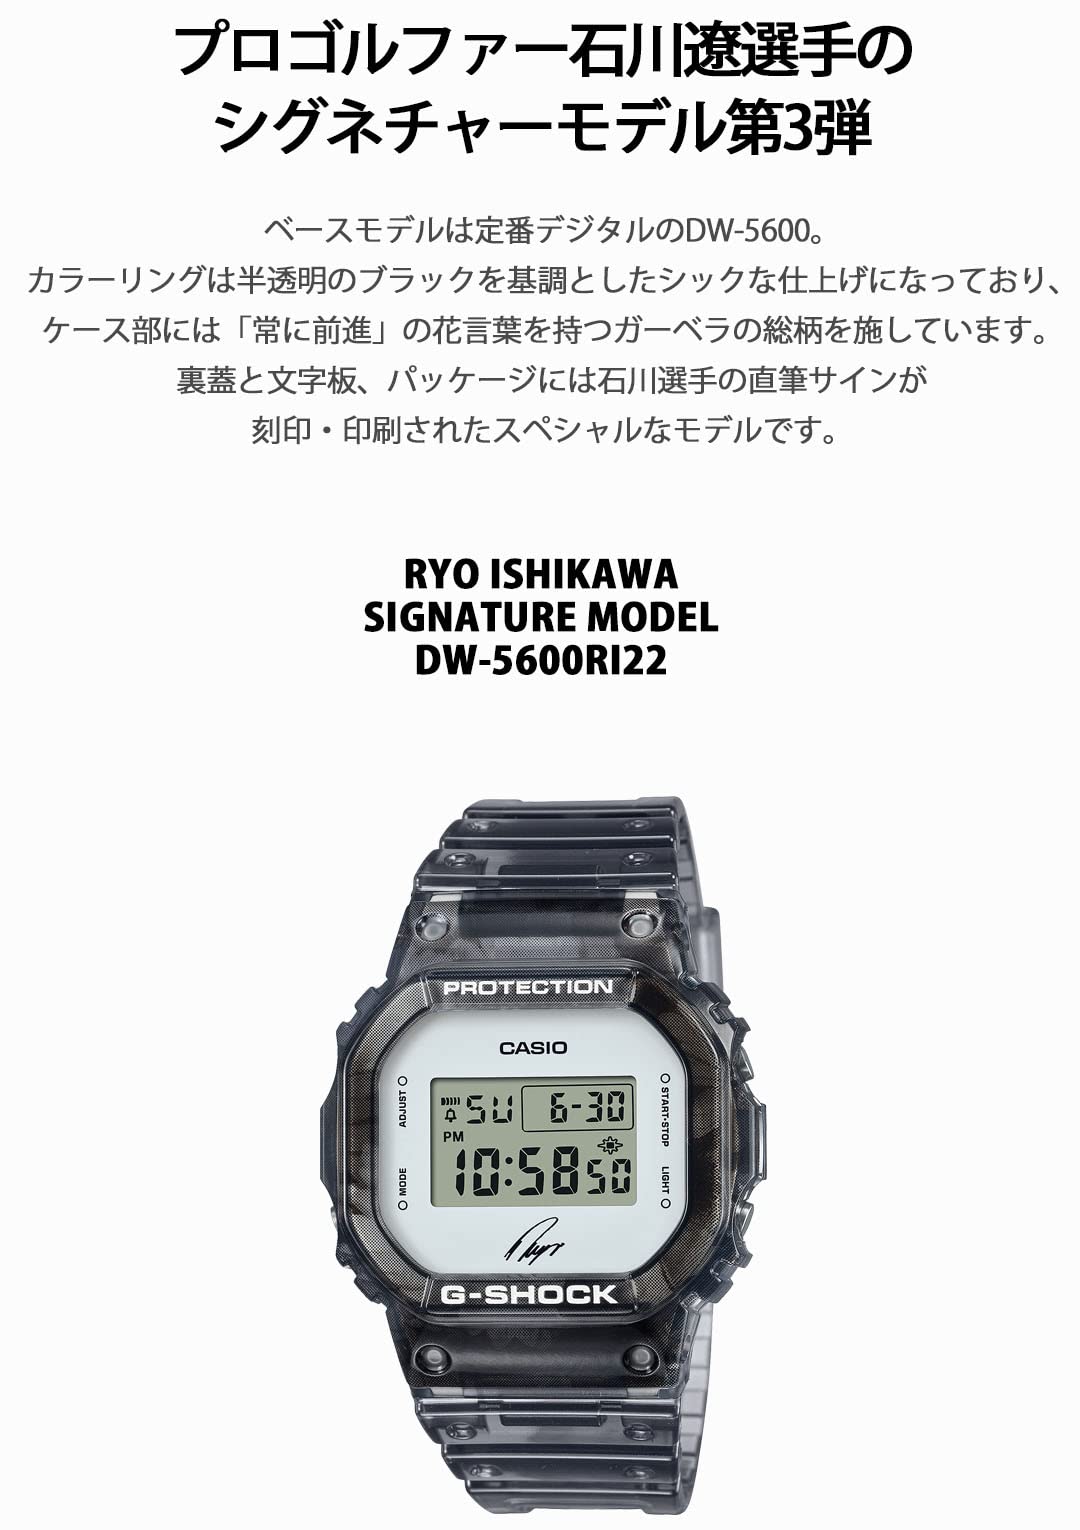 [カシオ] 腕時計 ジーショック 【国内正規品】 RYO ISHIKAWA SIGNATURE MODEL DW-5600RI22-1JR メンズ スケルトンブラック - BanzaiHobby